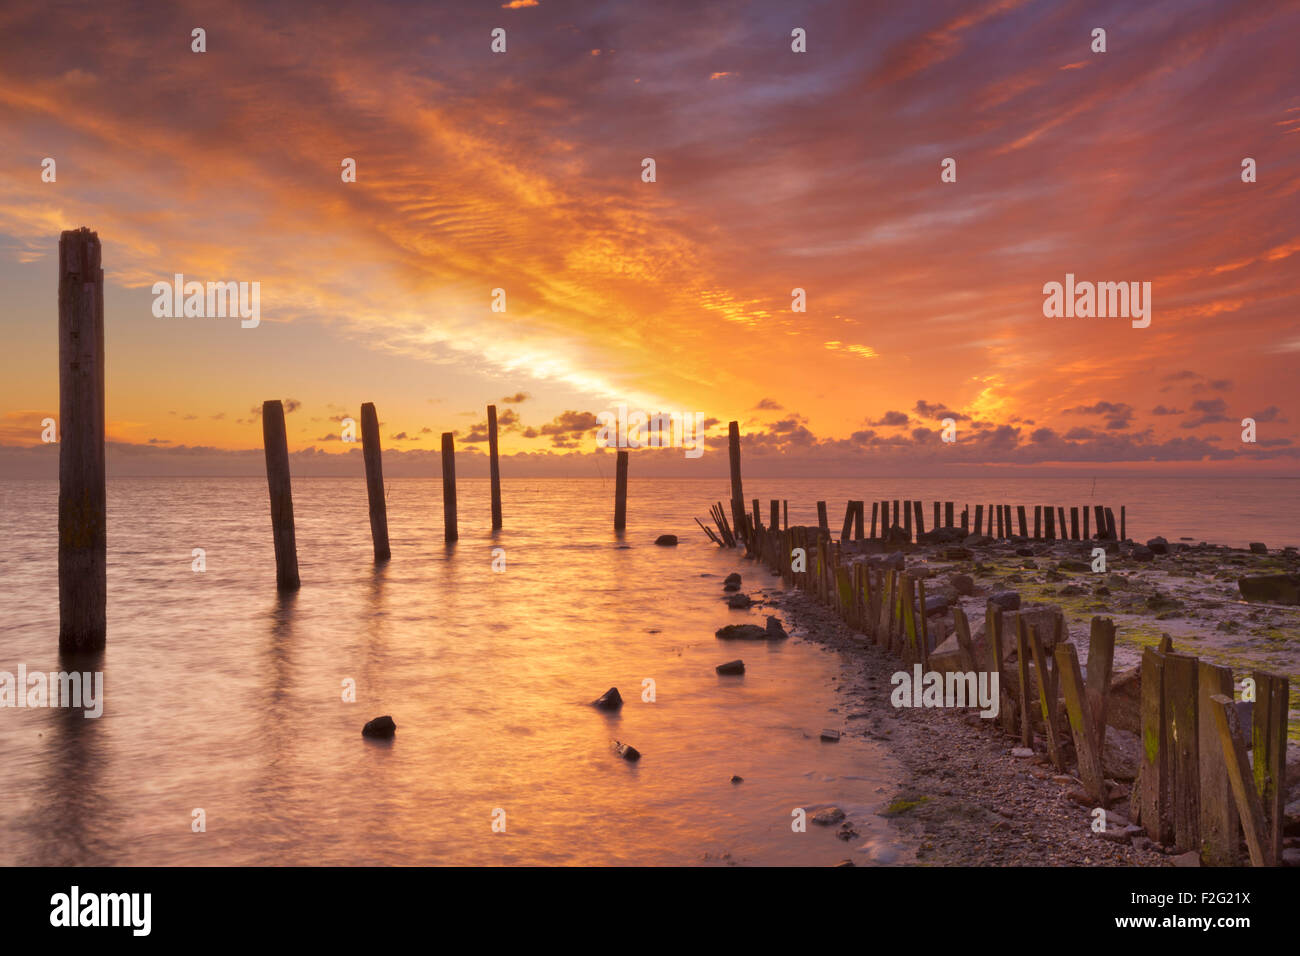 Farben der spektakulären Sonnenaufgang über dem Meer auf der Insel Texel in den Niederlanden. Stockfoto